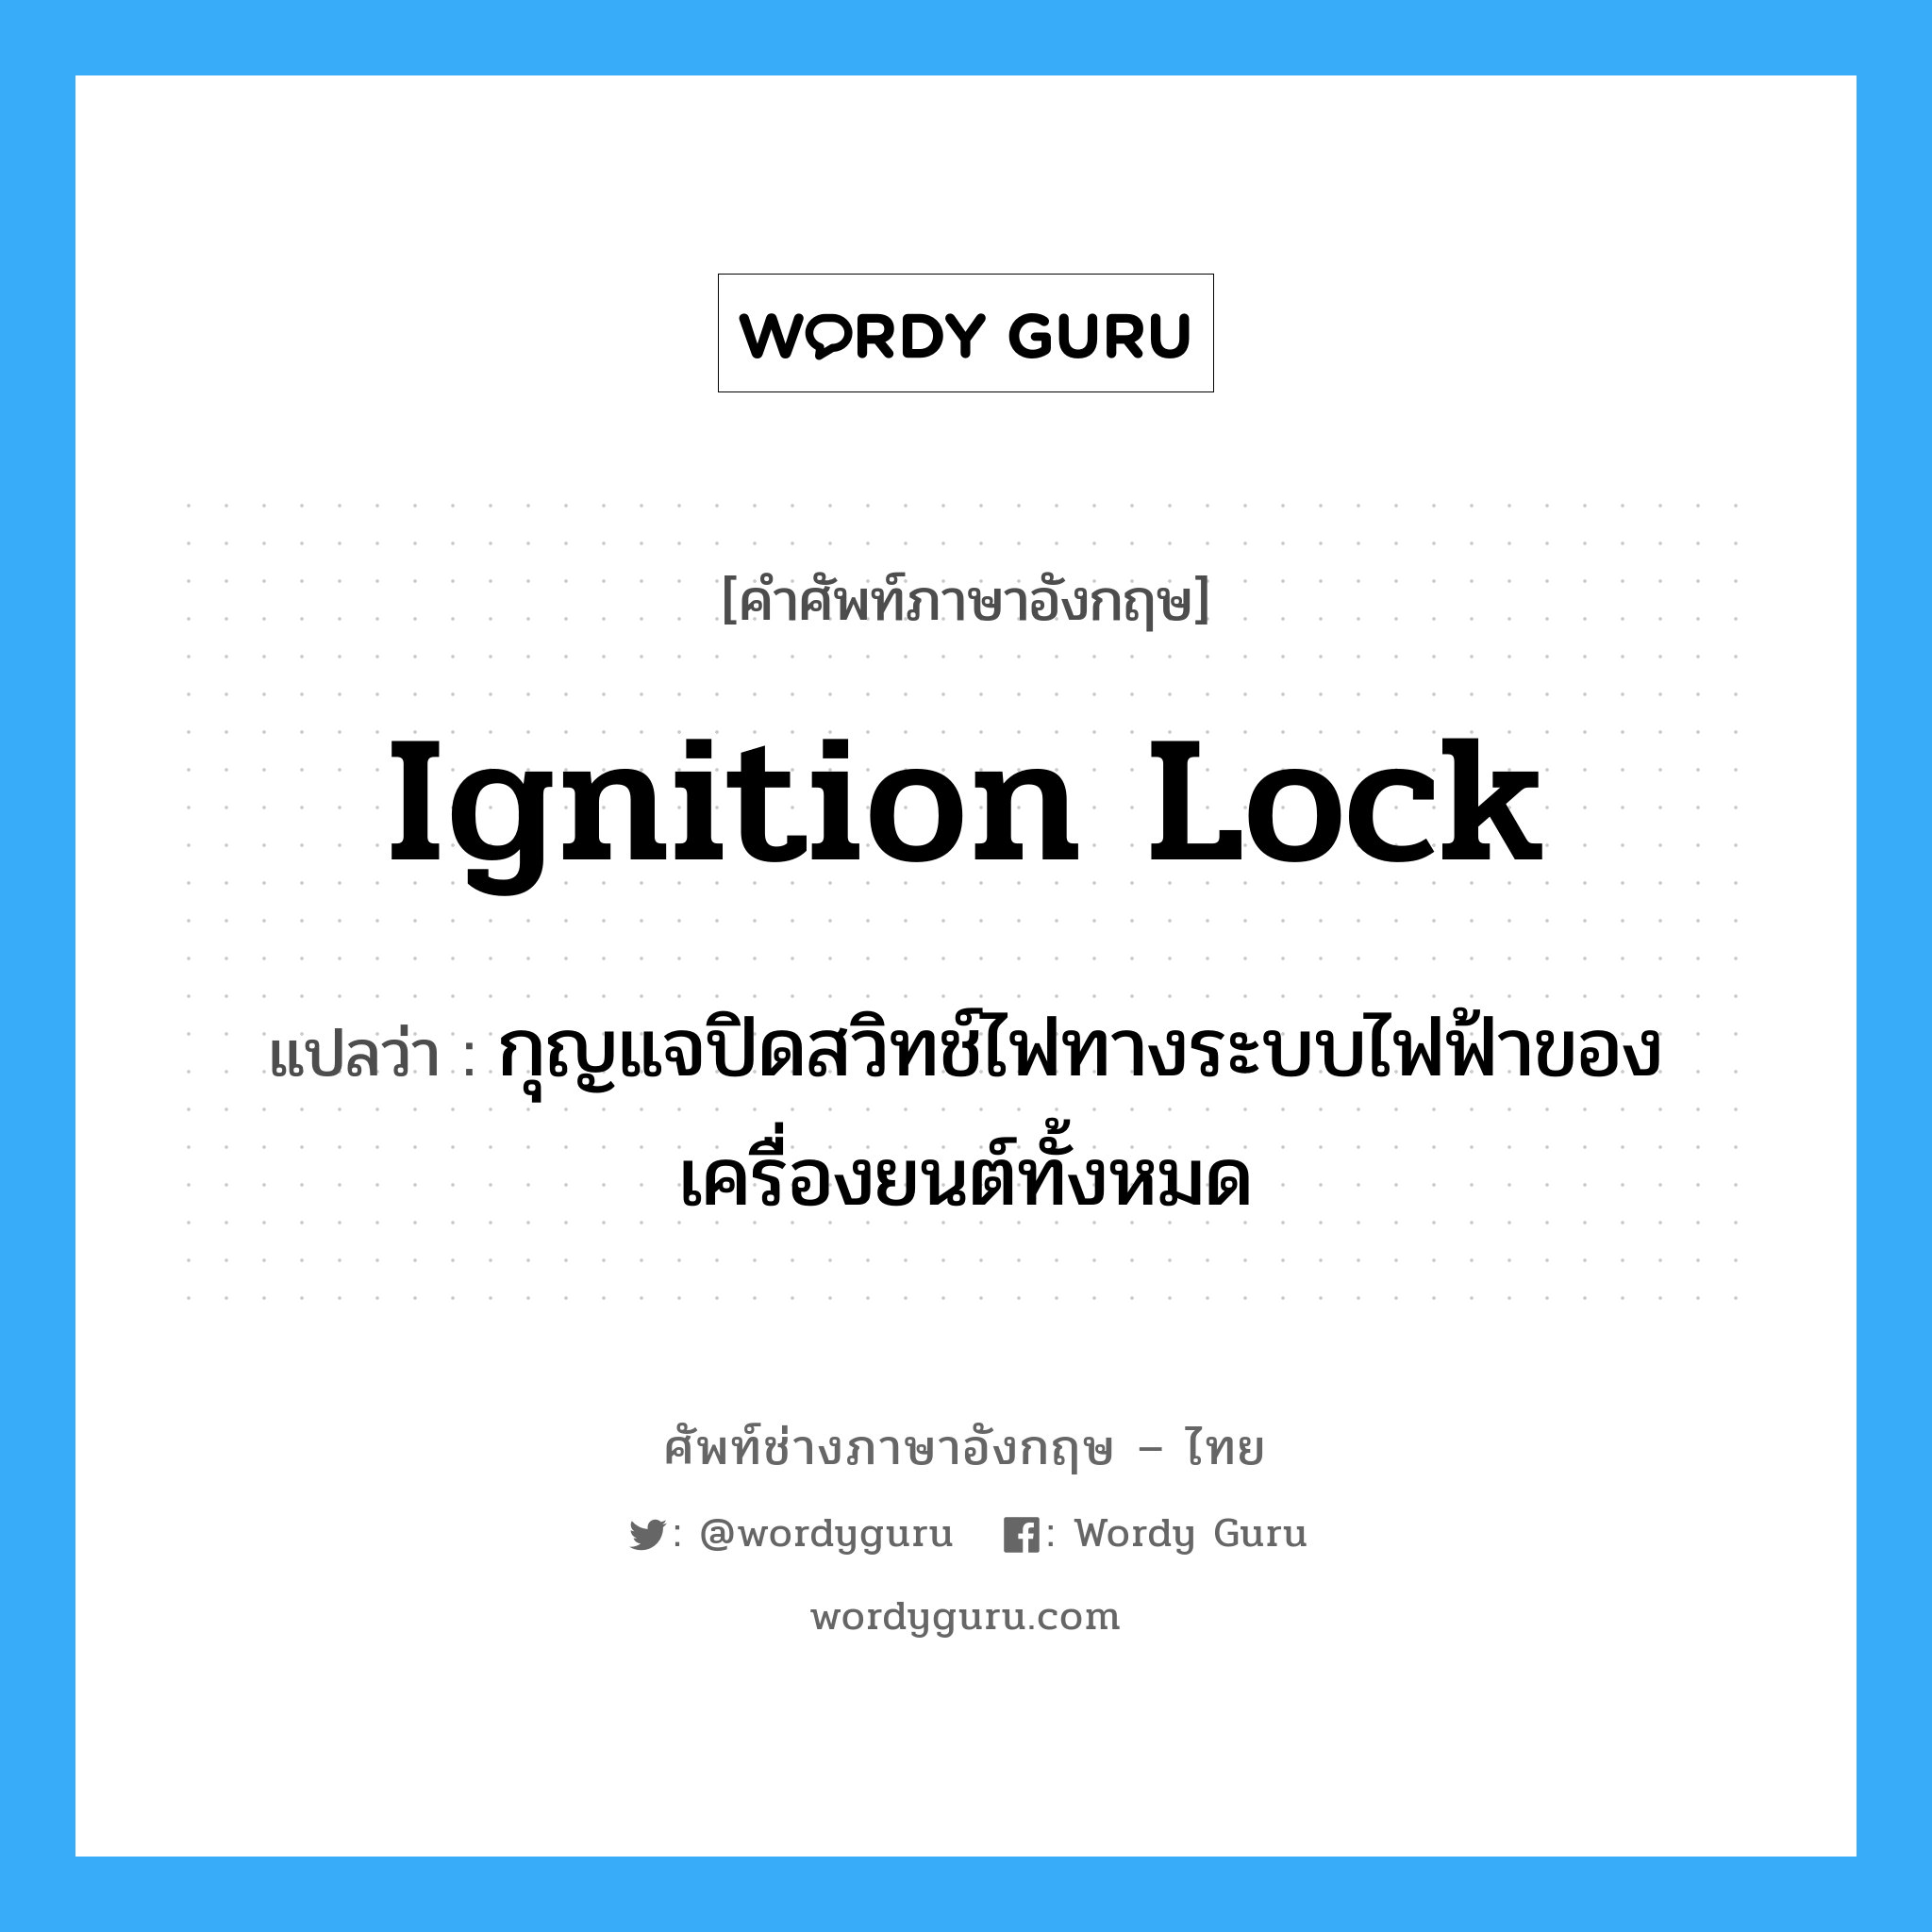 ignition lock แปลว่า?, คำศัพท์ช่างภาษาอังกฤษ - ไทย ignition lock คำศัพท์ภาษาอังกฤษ ignition lock แปลว่า กุญแจปิดสวิทช์ไฟทางระบบไฟฟ้าของเครื่องยนต์ทั้งหมด